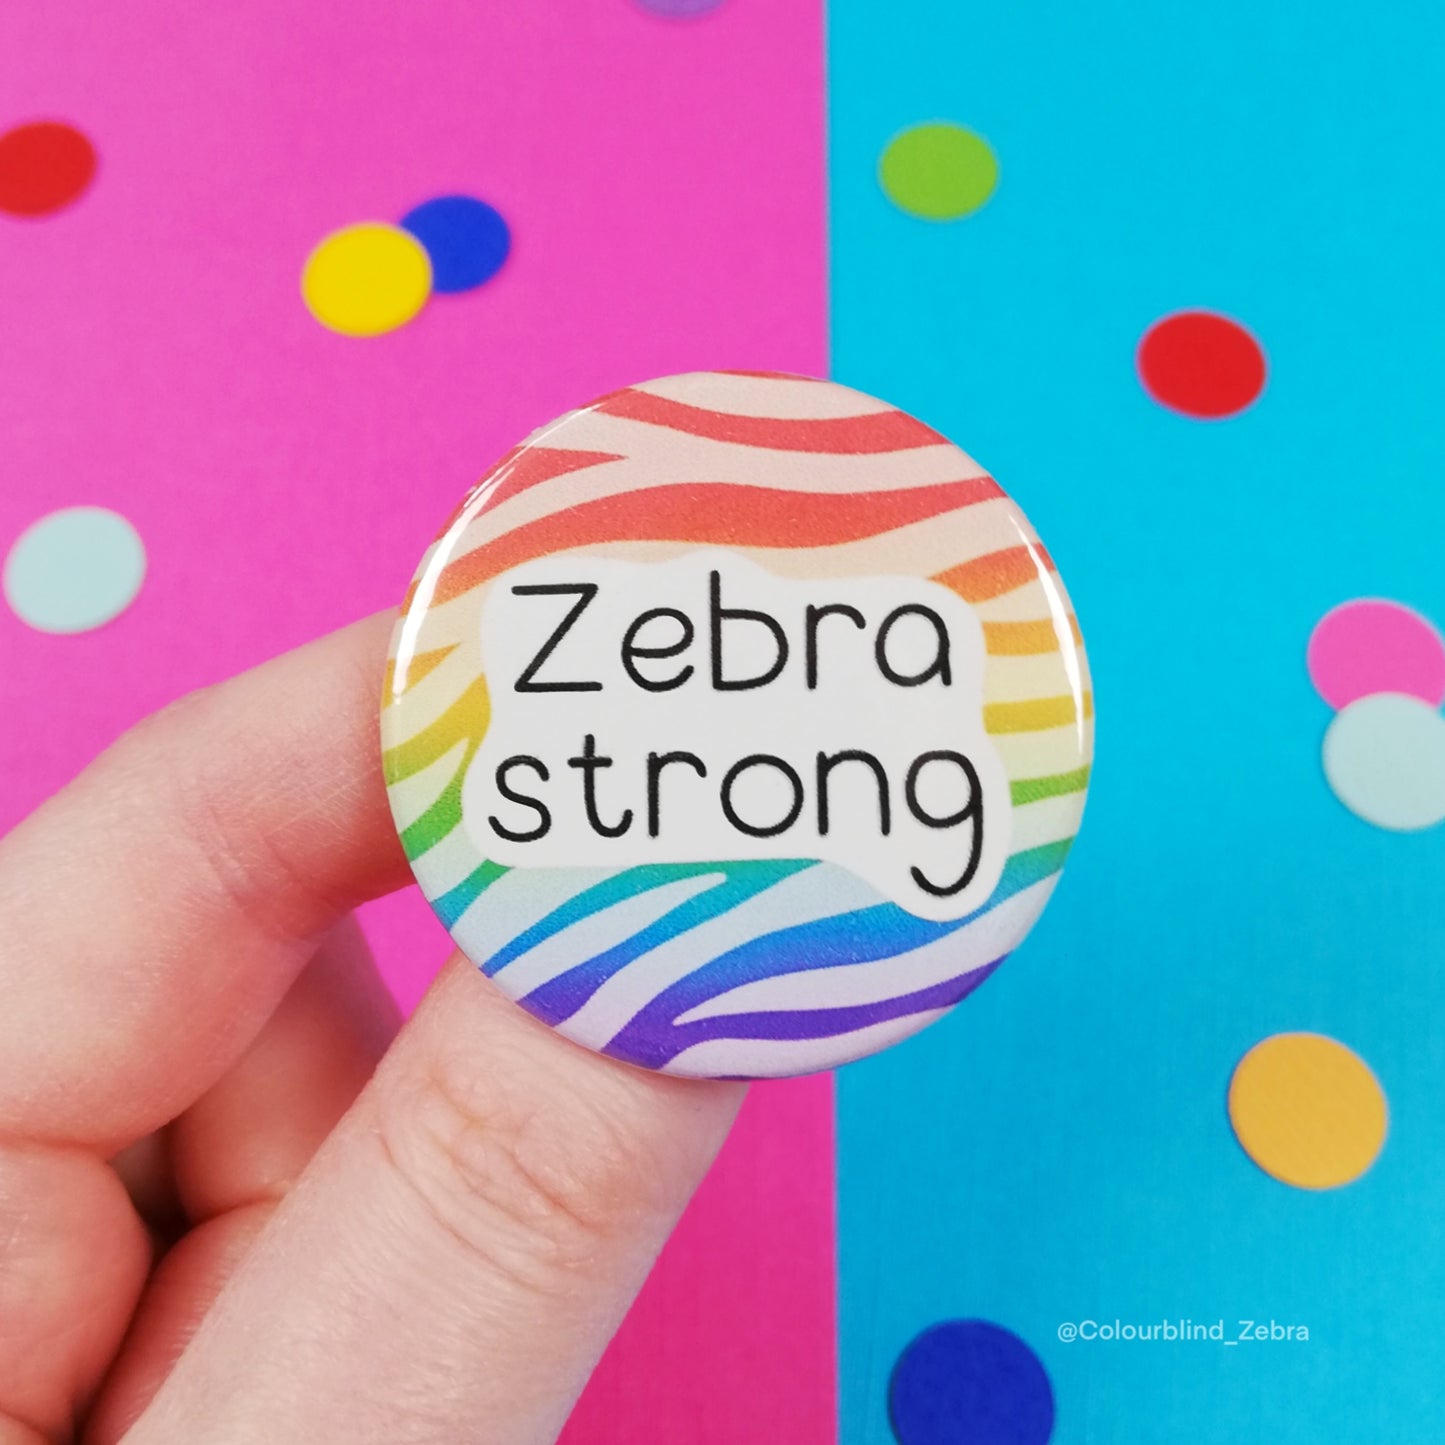 Zebra Strong Button Badge